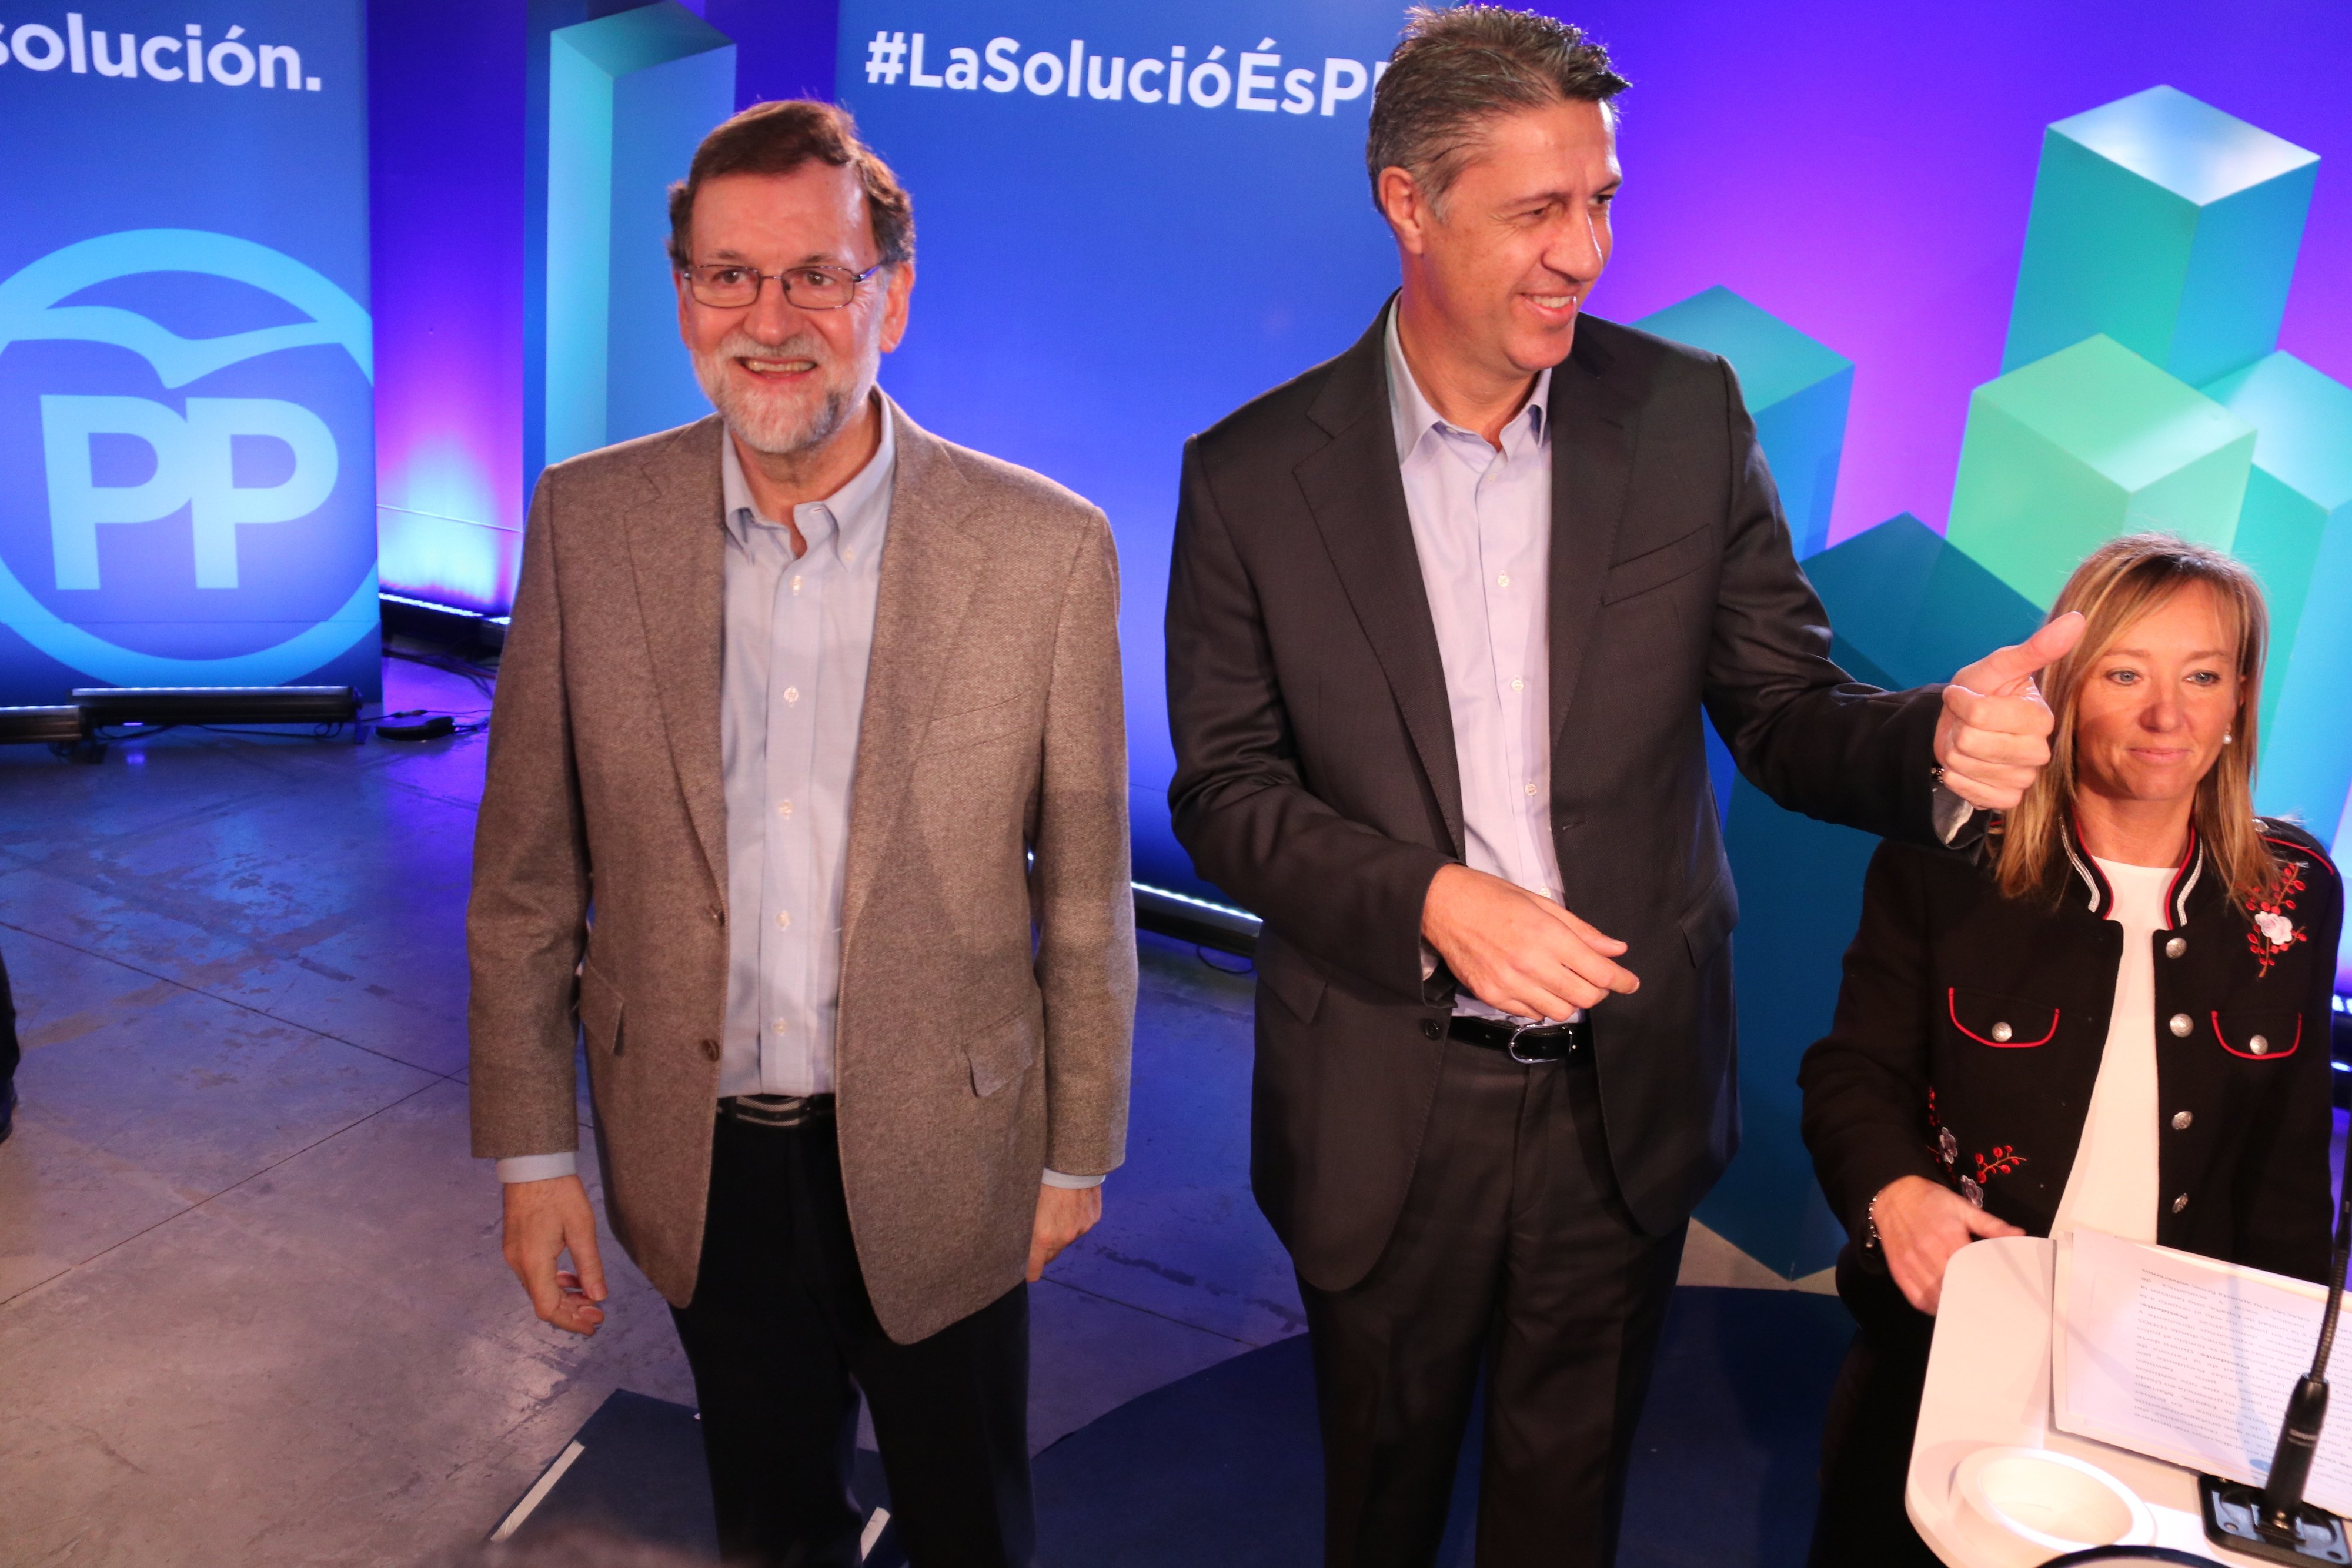 Rajoy: “El procés fa molt mal a les persones i la seva essència”